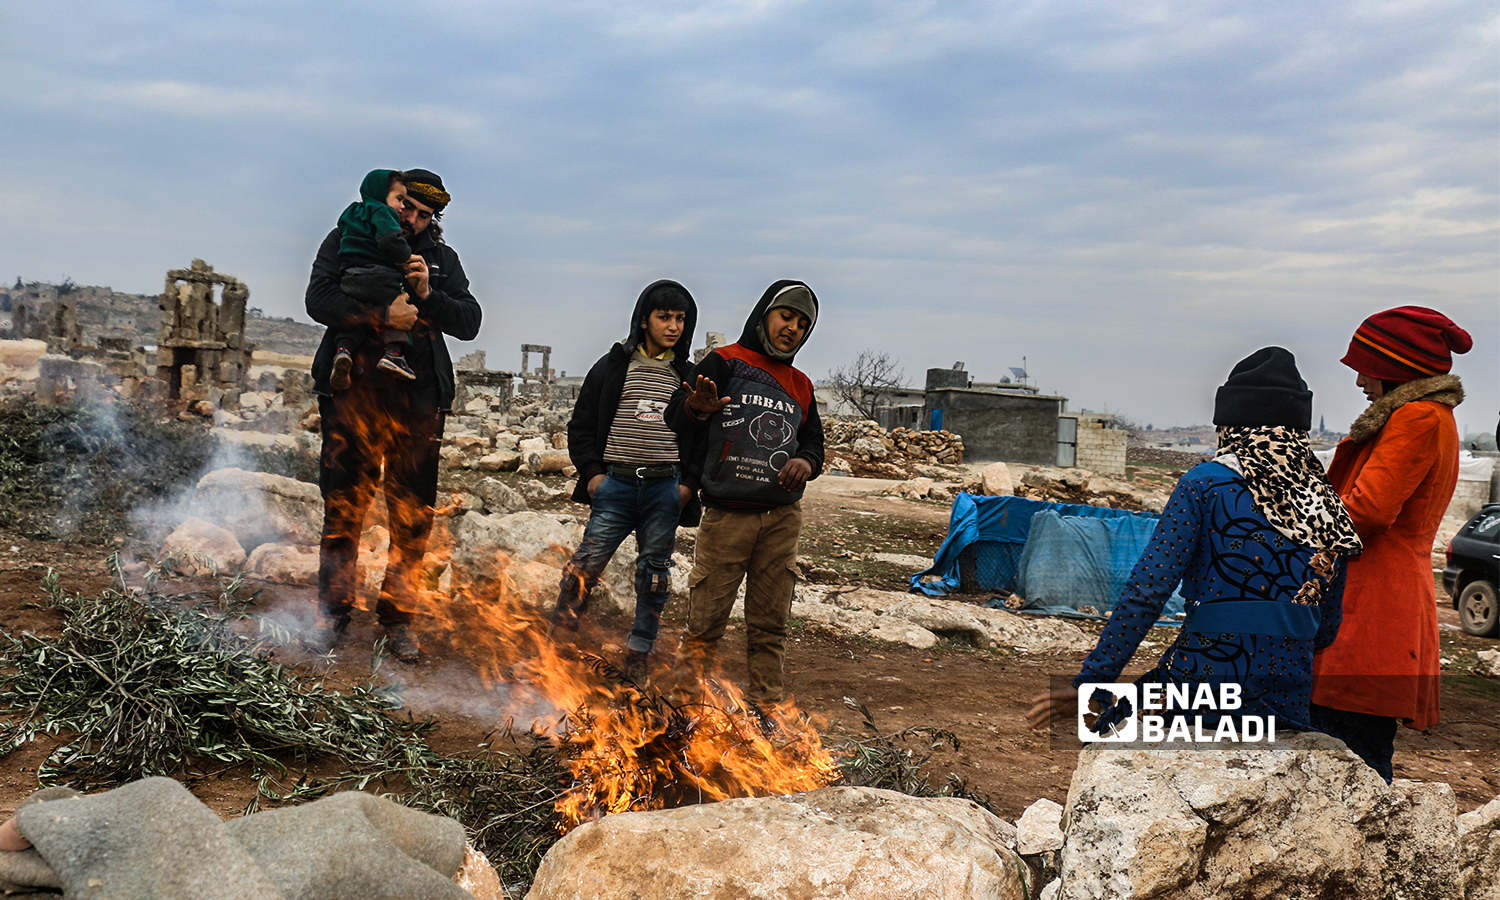 مهجرون سوريون يشعلون نار للتدفئة  في منطقة سرجبلة الأثرية في ريف إدلب الشمالي- 22 كانون الثاني 2022 (عنب بلدي / إياد عبد الجواد)
